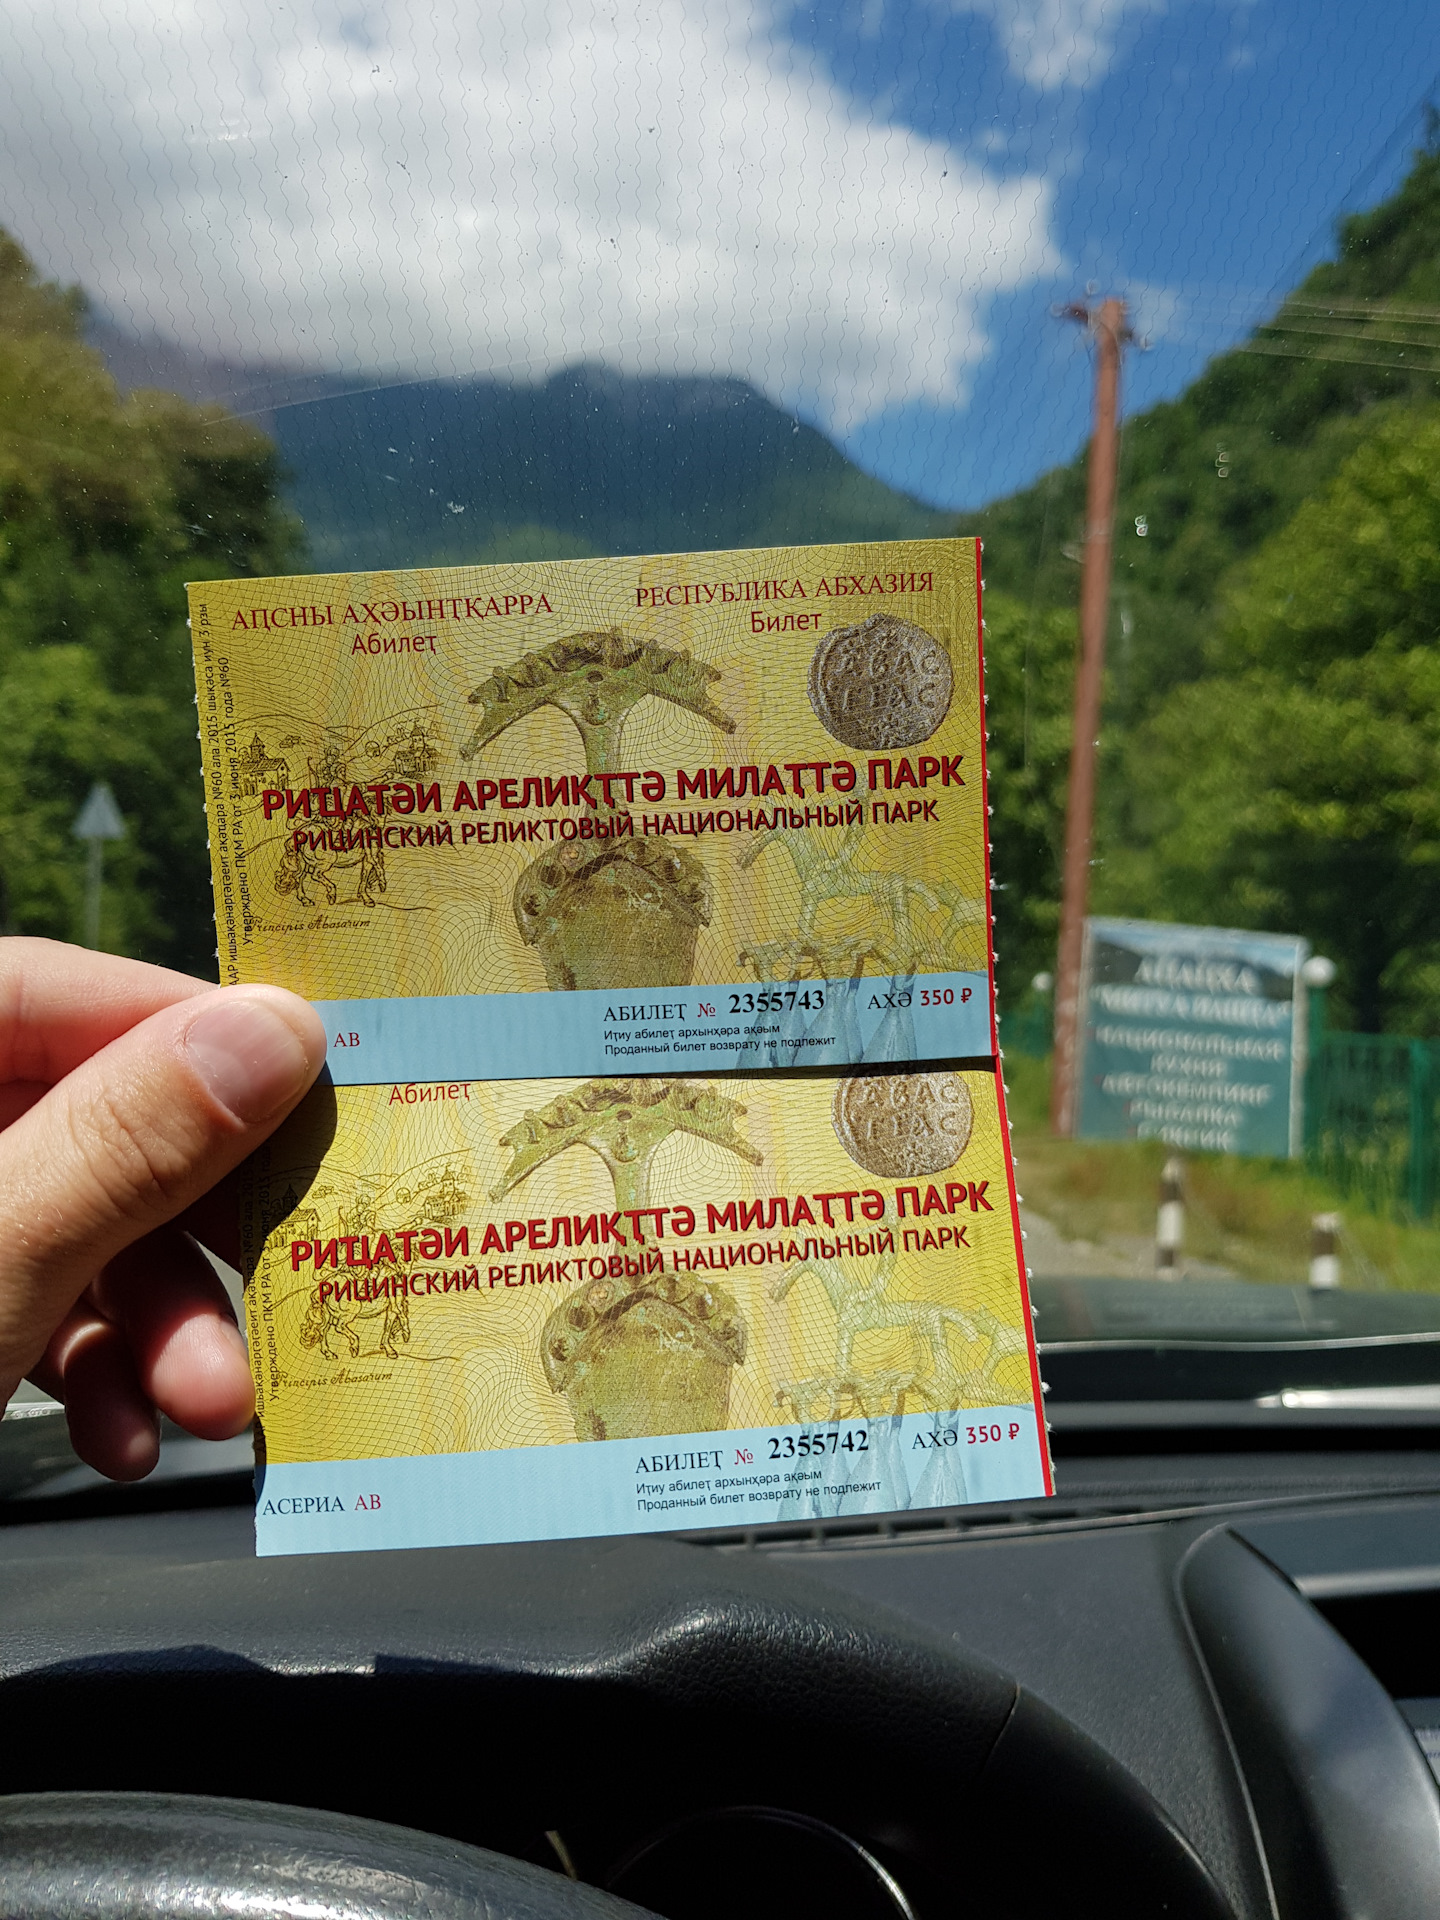 Билеты казань абхазия. Рицинский реликтовый национальный парк билет. Билеты в Абхазию. Абхазия билеты на самолет. Билет на самолет до Абхазии.